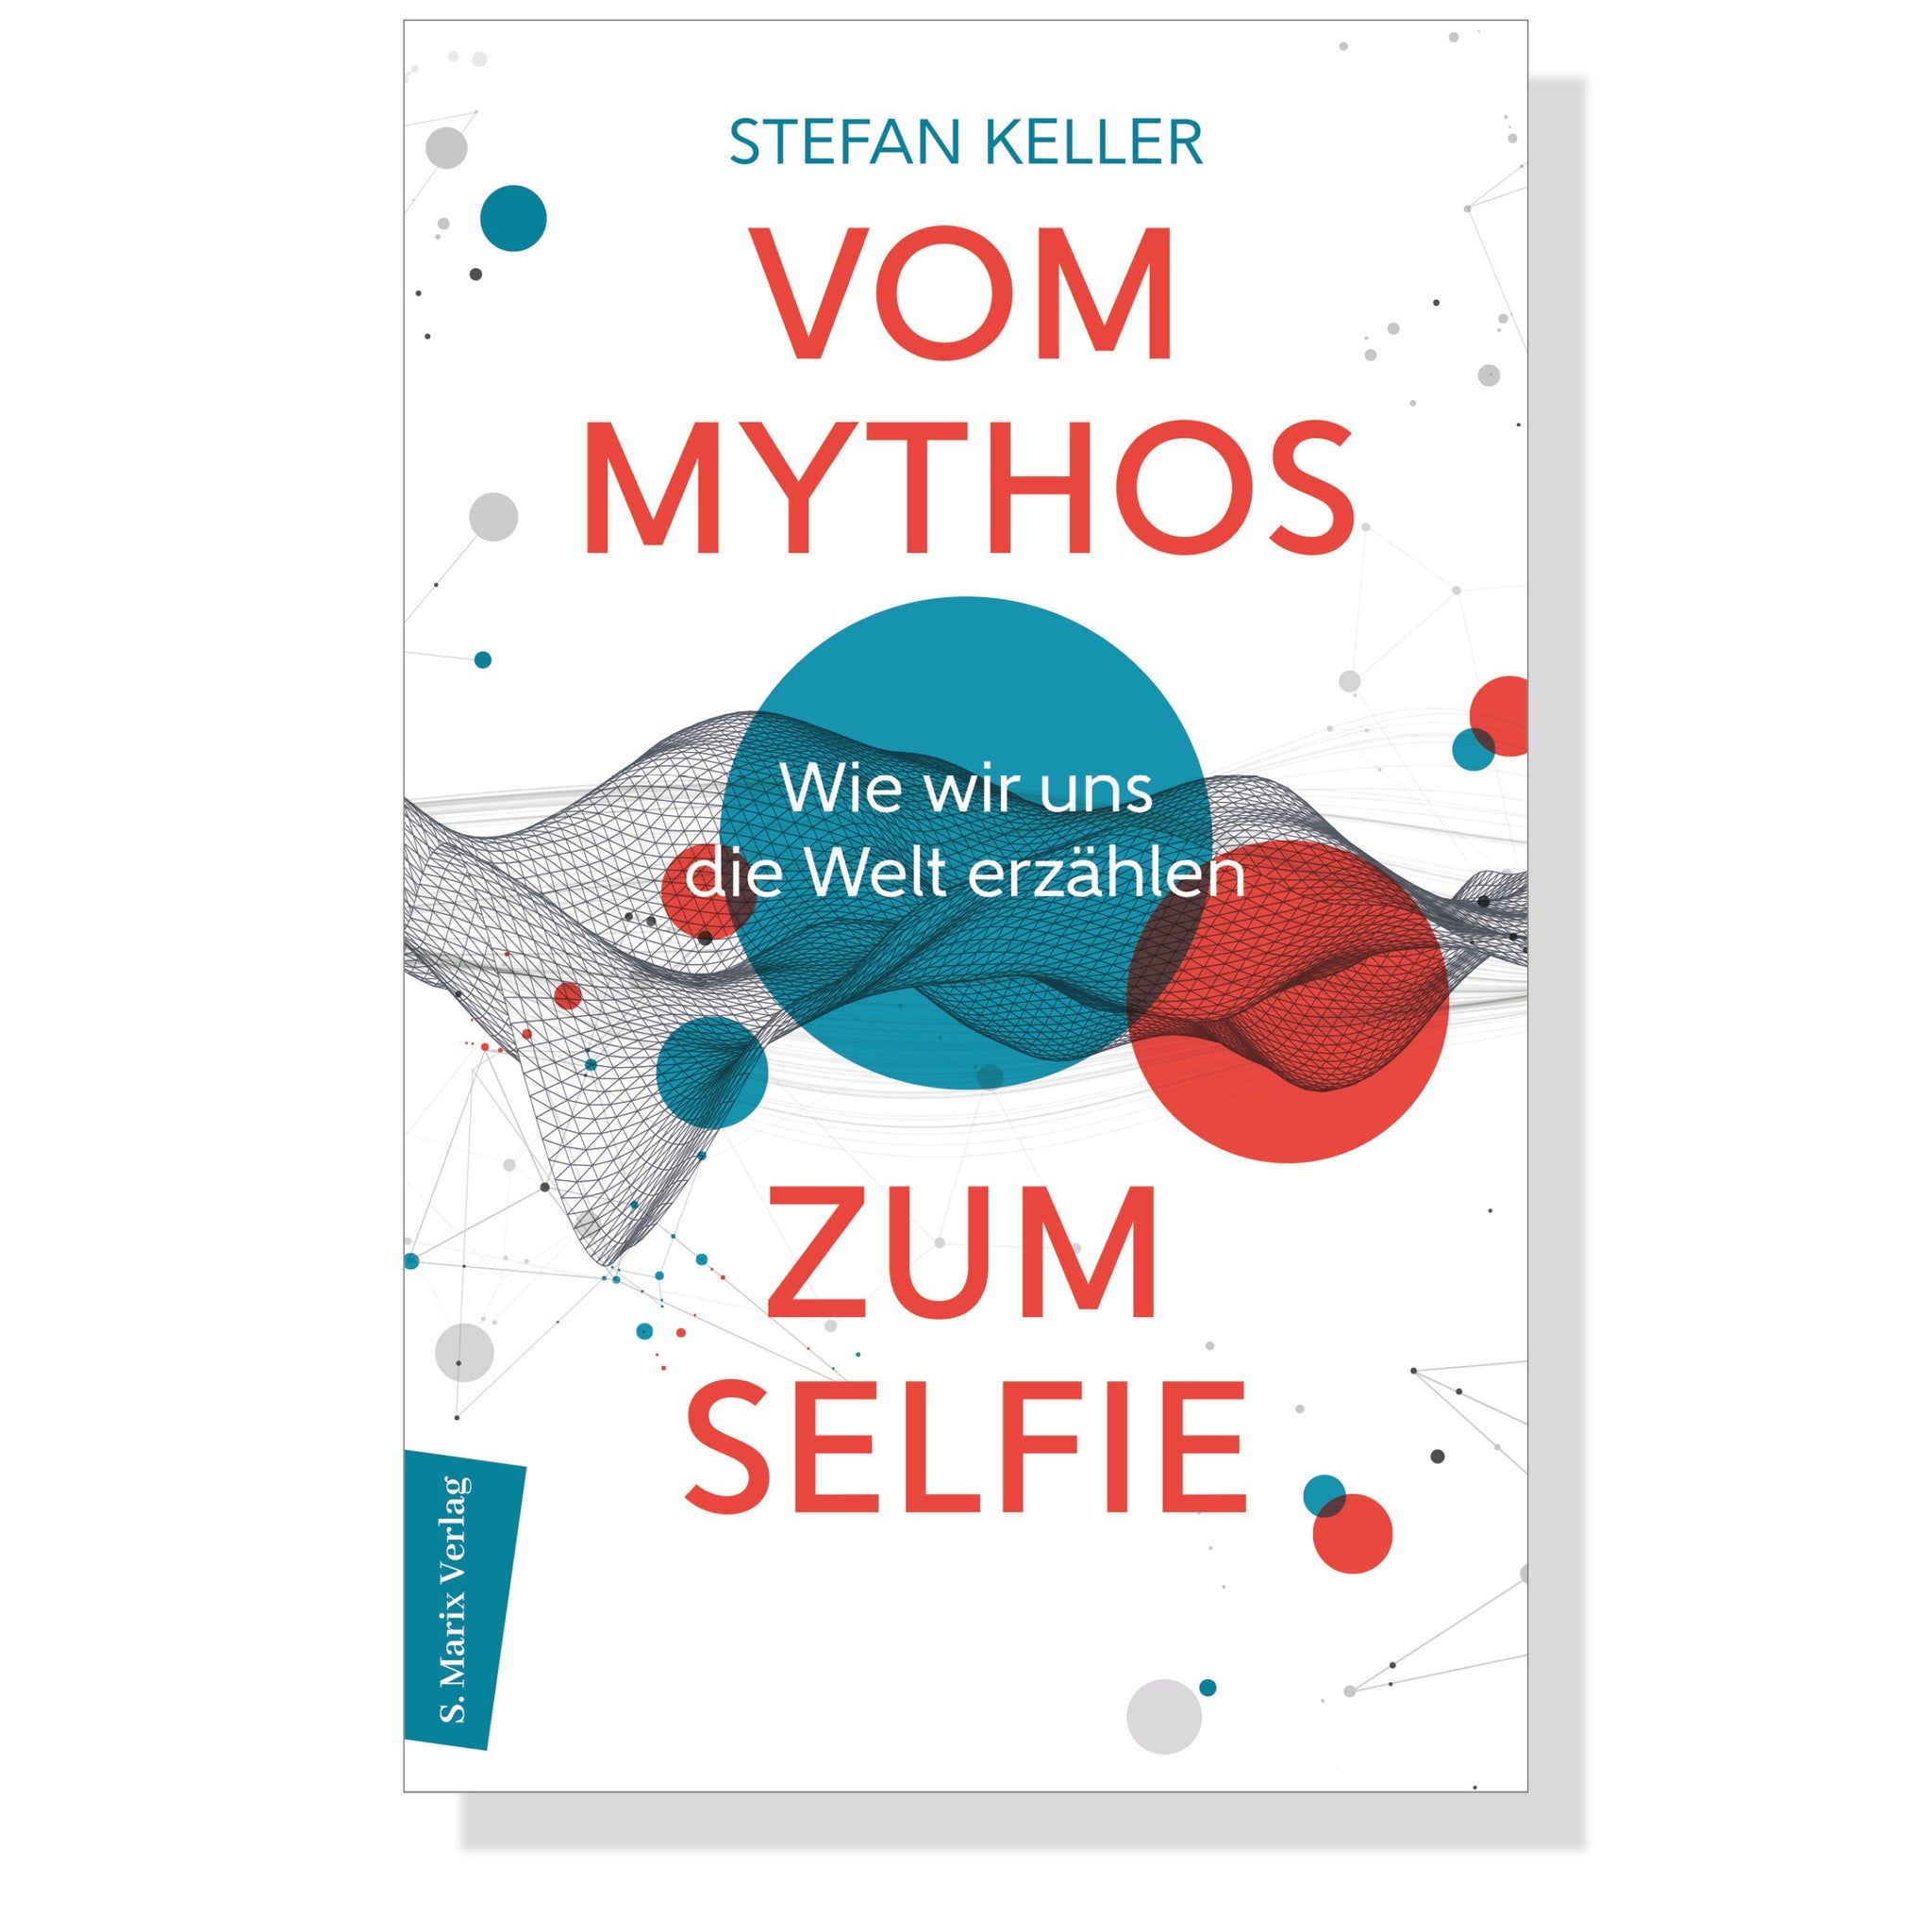 Vom Mythos zum Selfie